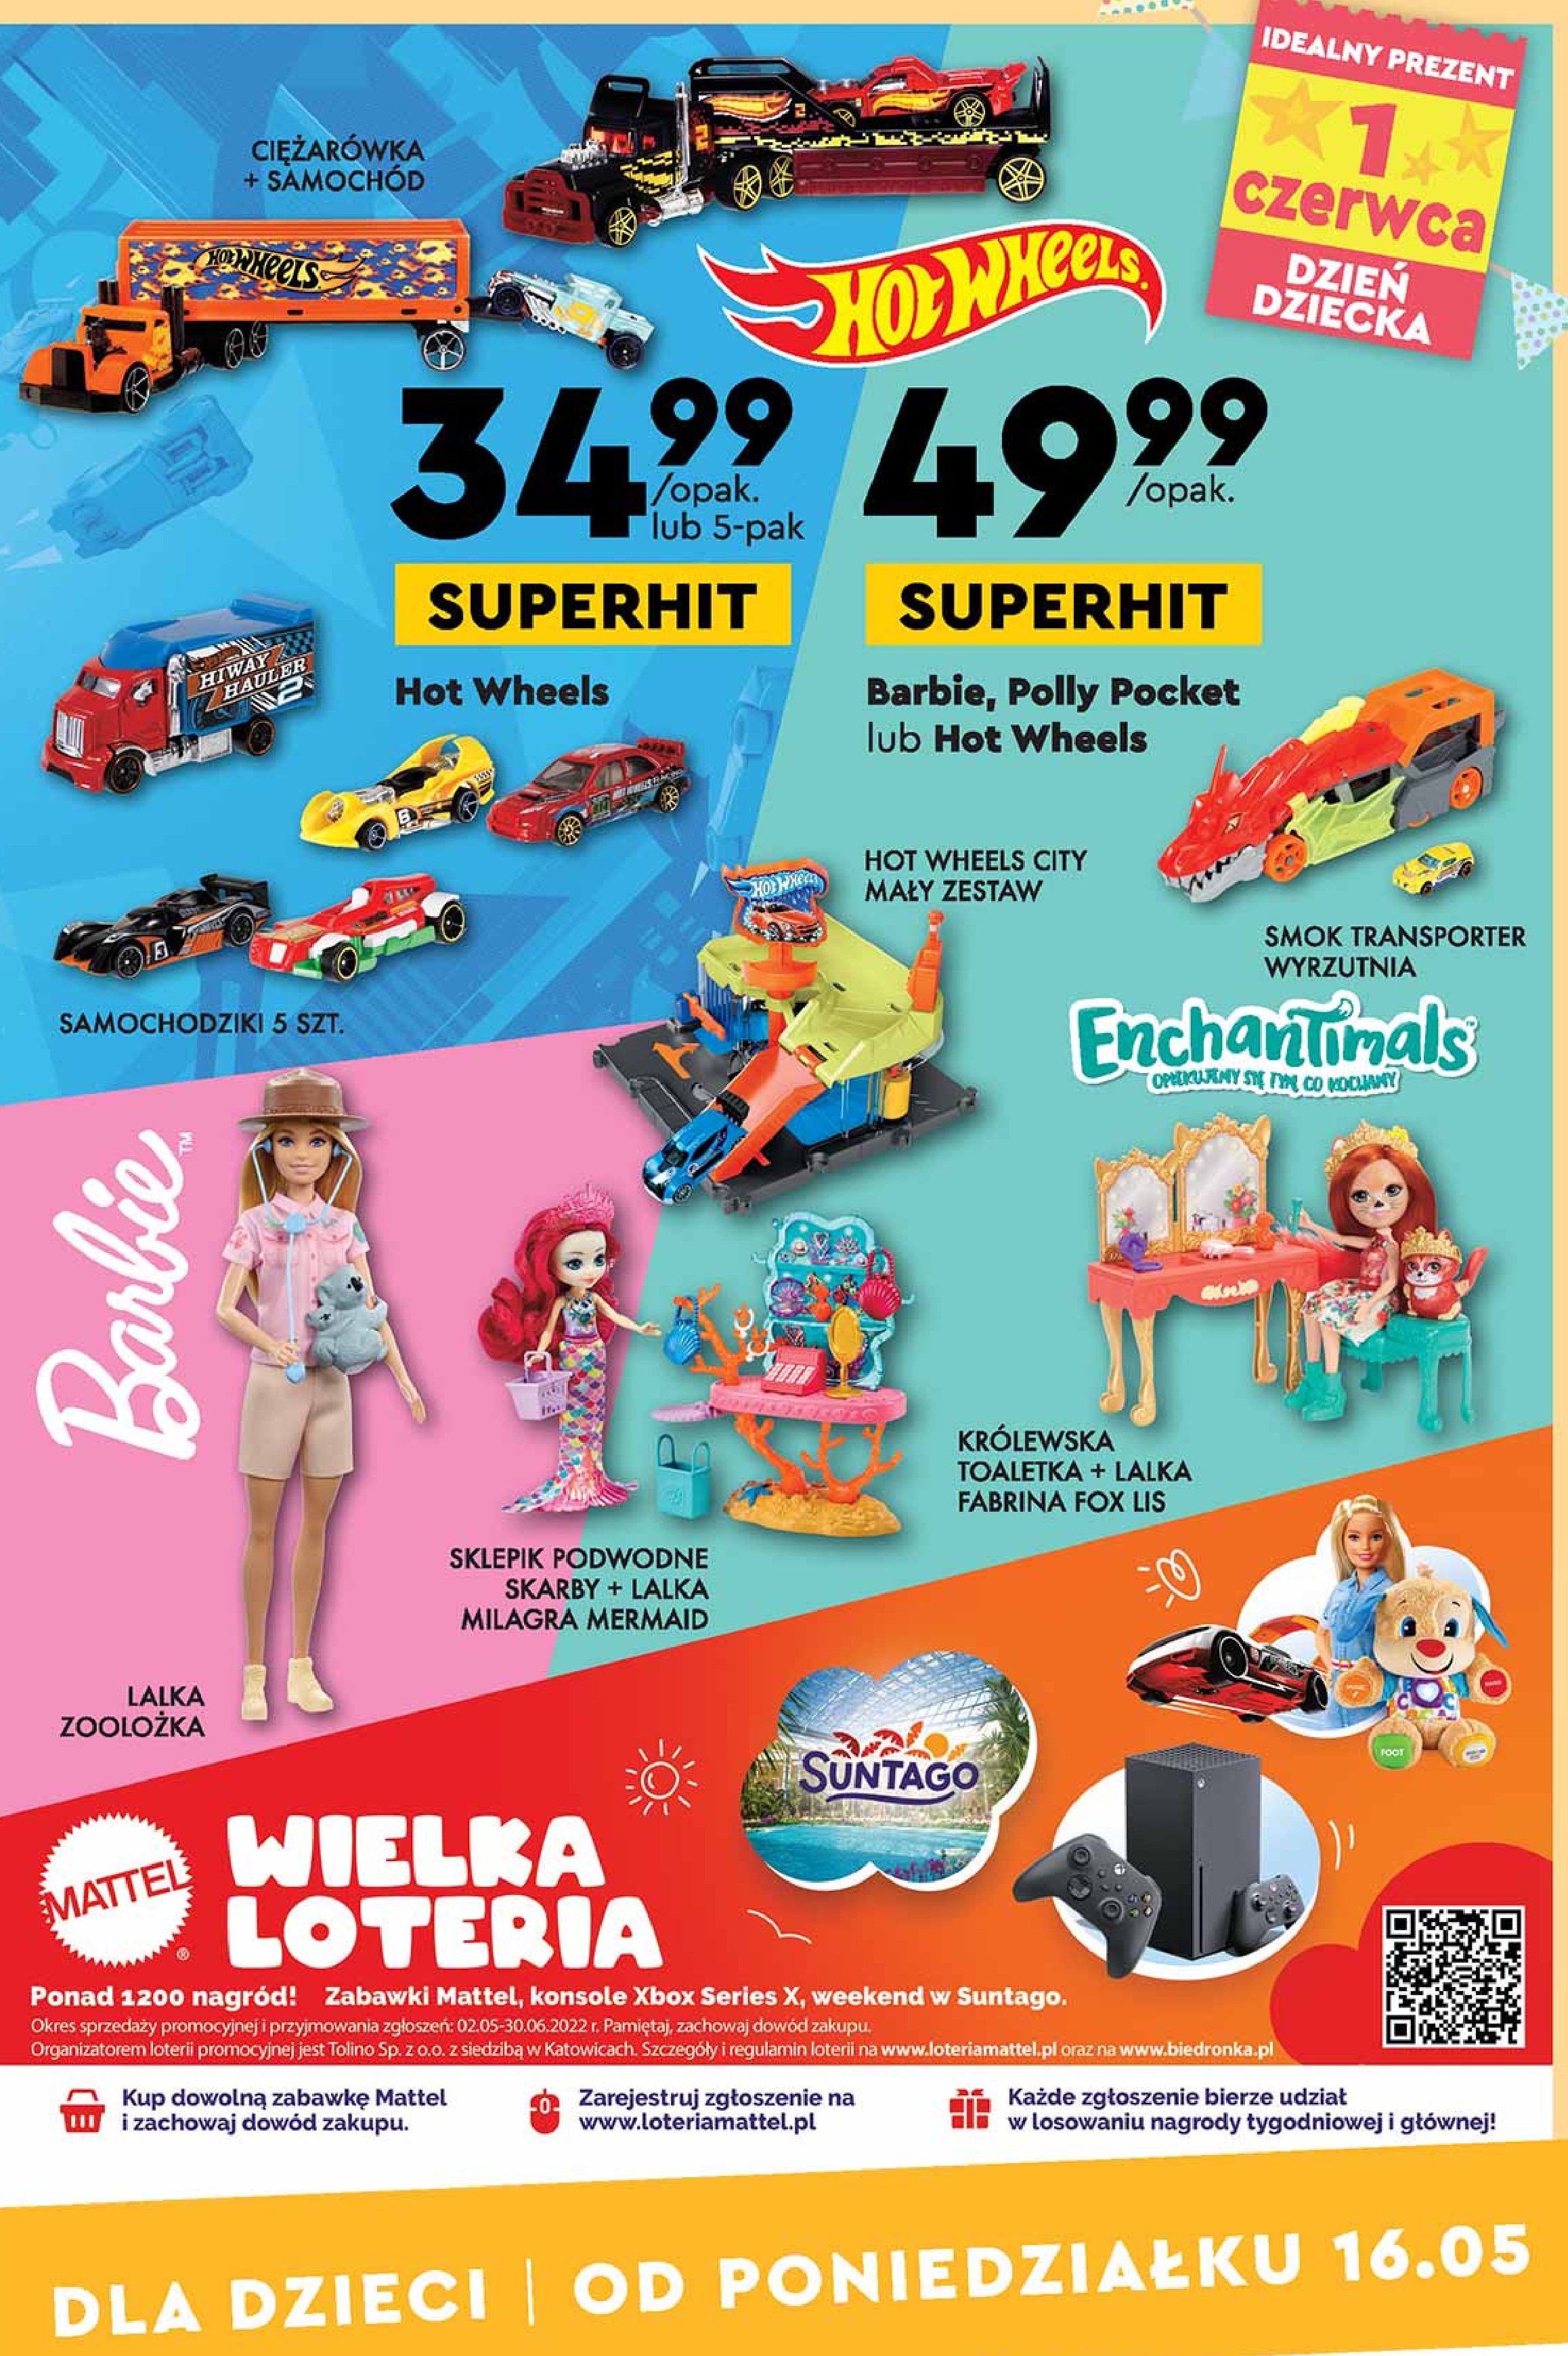 Merliah podwodna syrenka Mattel promocja